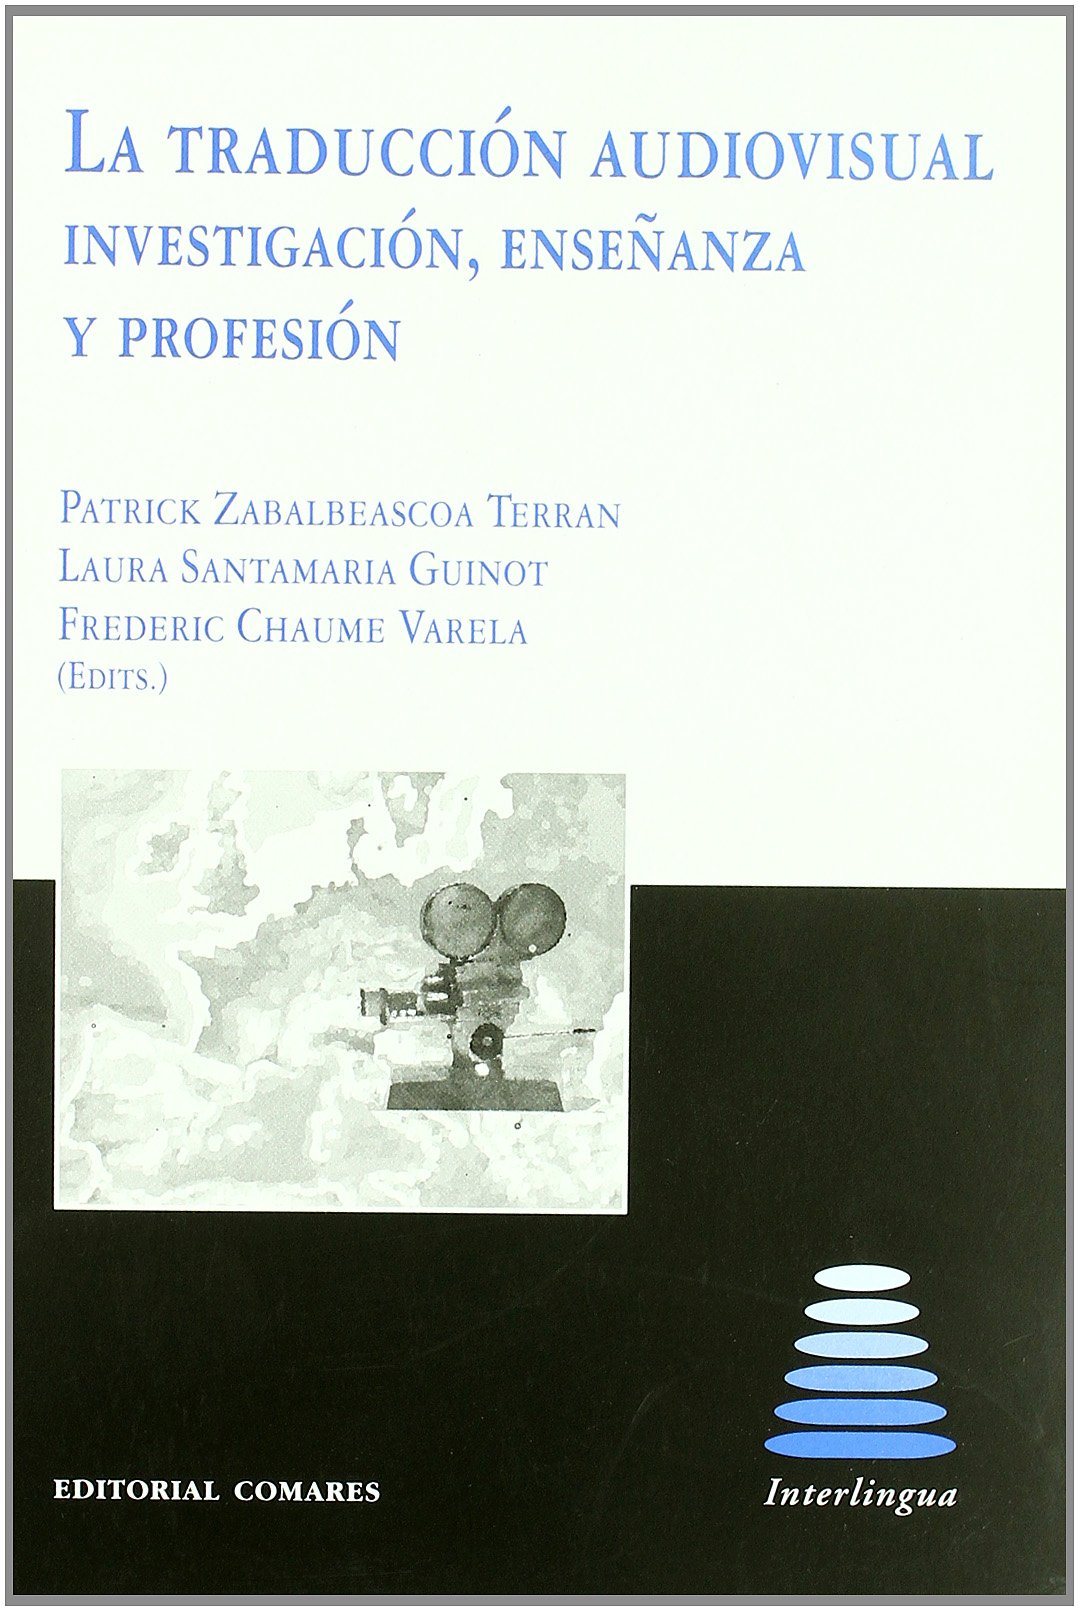 Imagen de portada del libro La traducción audiovisual